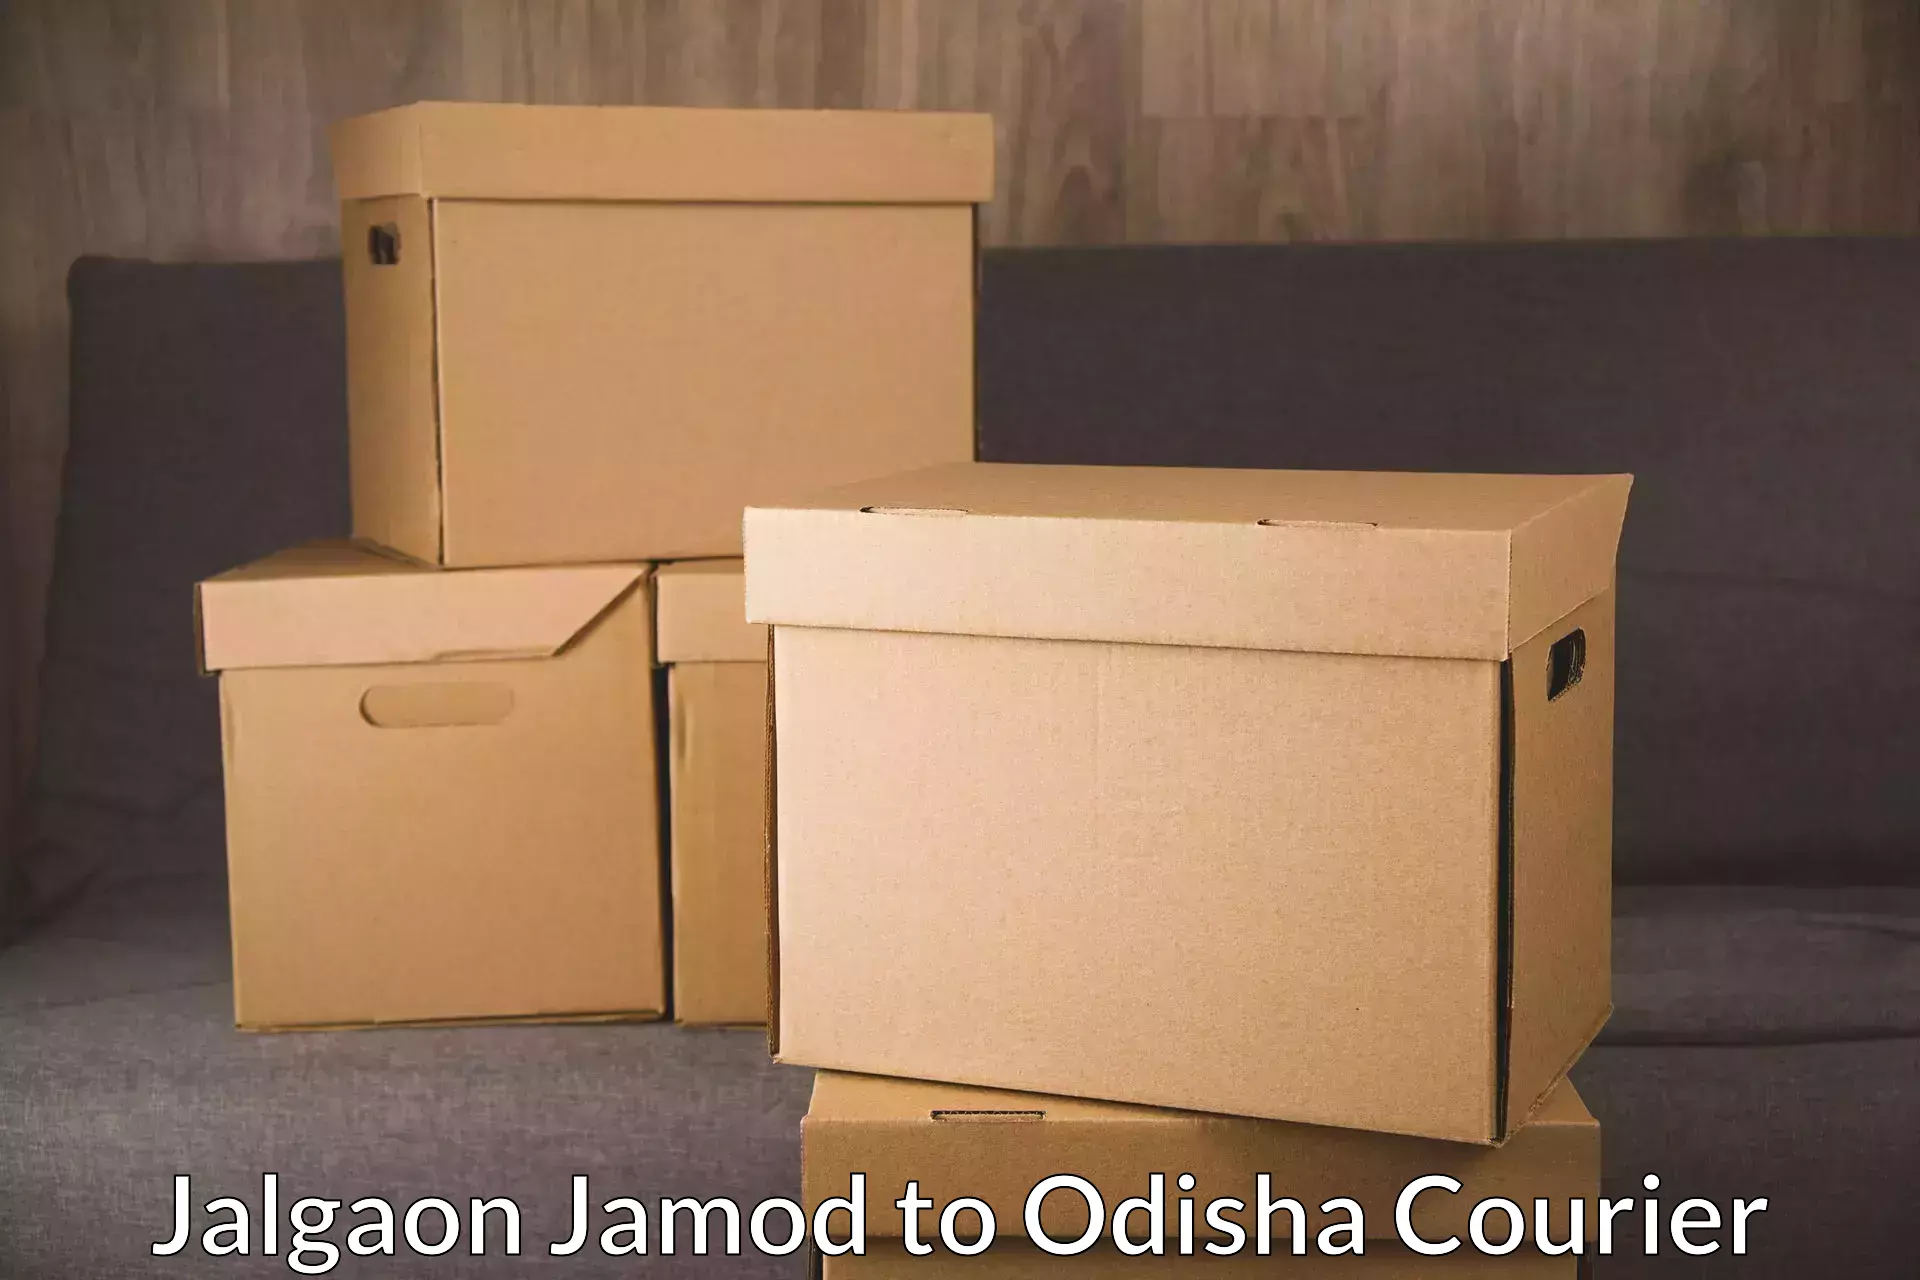 Full-service courier options Jalgaon Jamod to Odisha